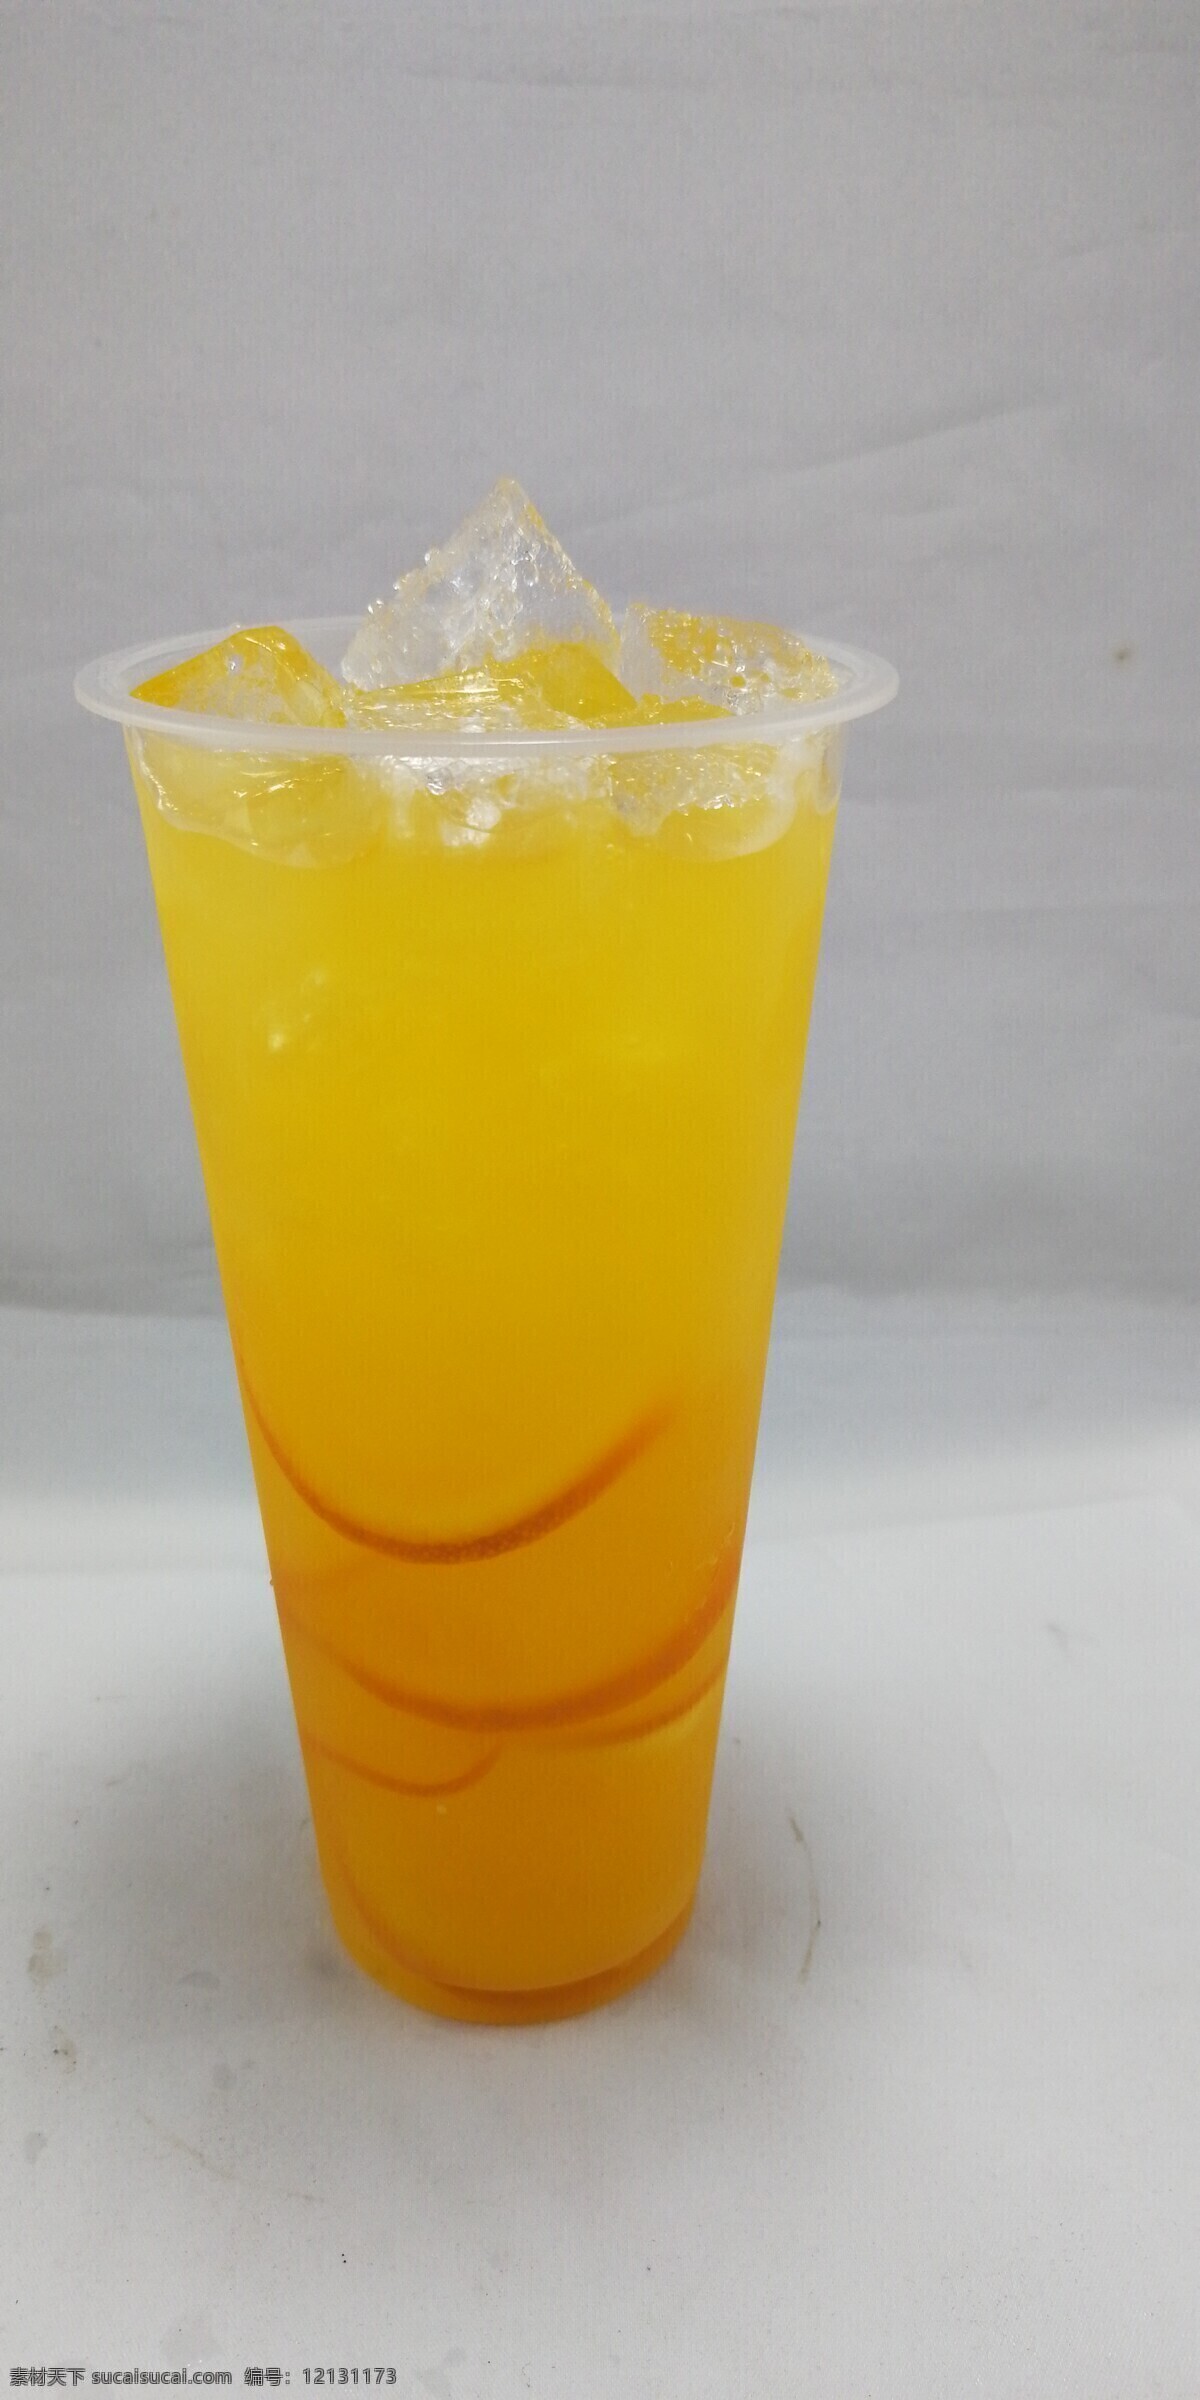 冰镇香橙汁 香橙芭乐 橙汁饮品 鲜橙汁 冰橙汁 拍摄图片 餐饮美食 饮料酒水